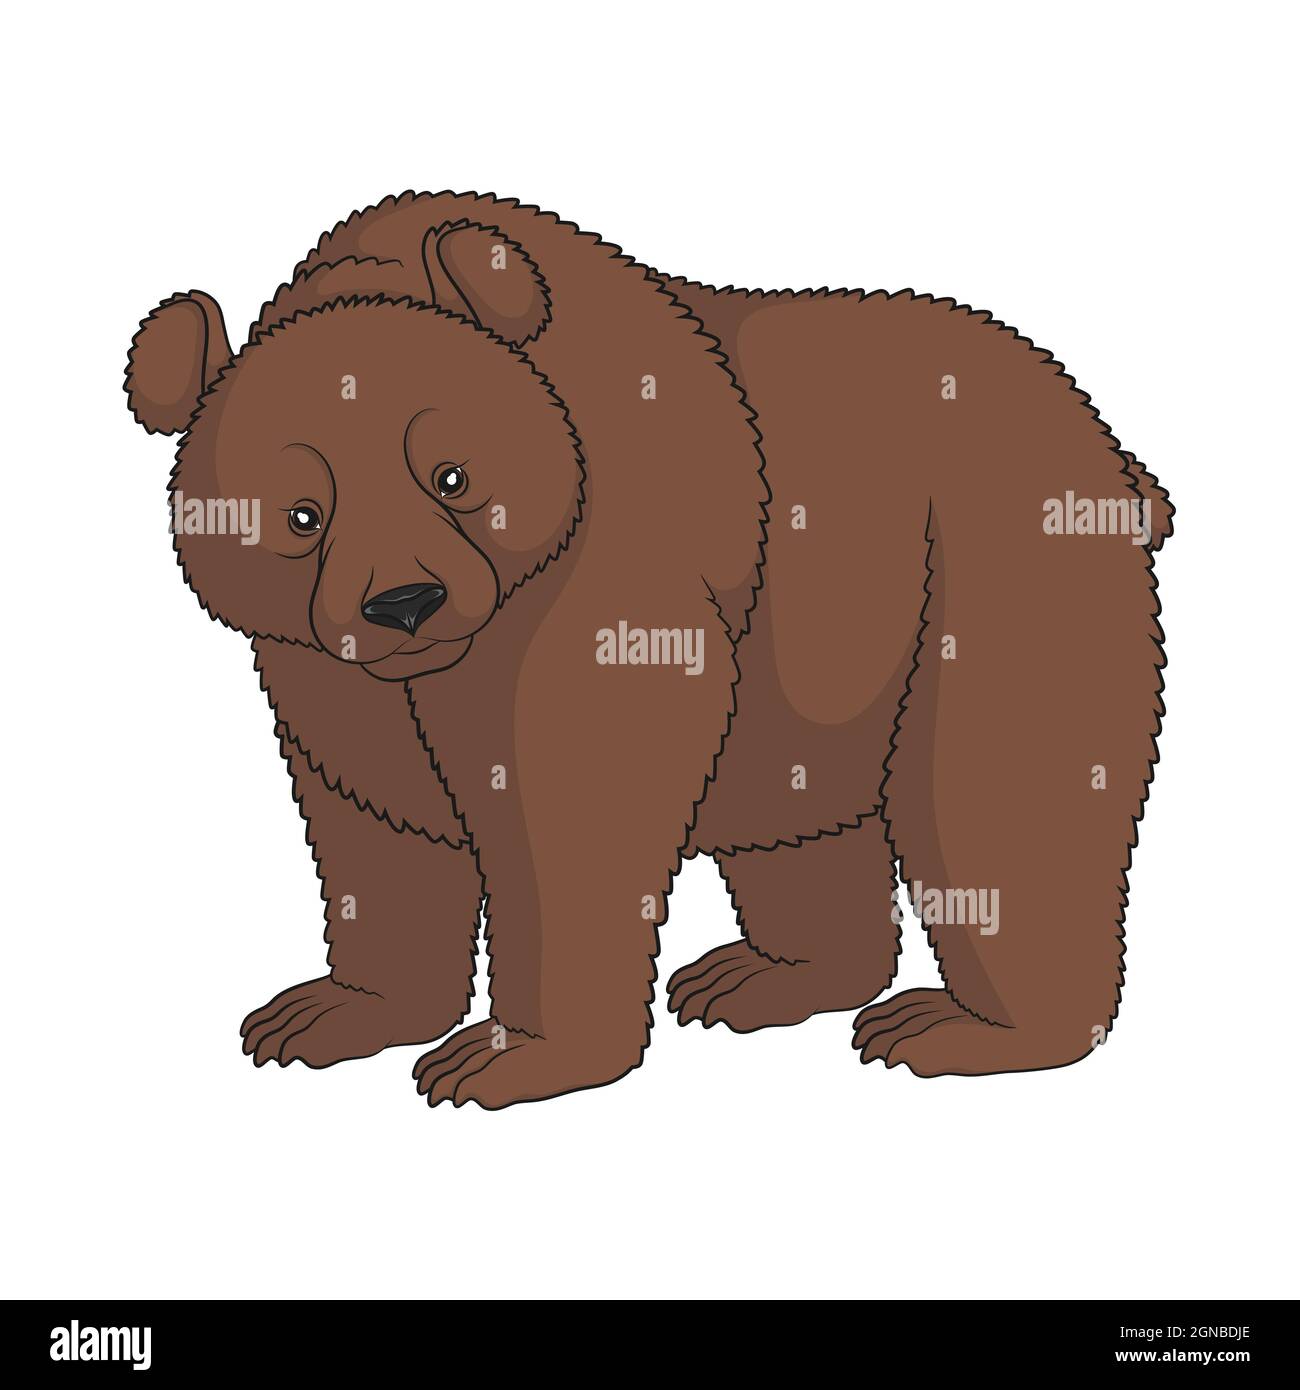 Immagine a colori di un orso bruno. Oggetto isolato su sfondo bianco. Illustrazione Vettoriale